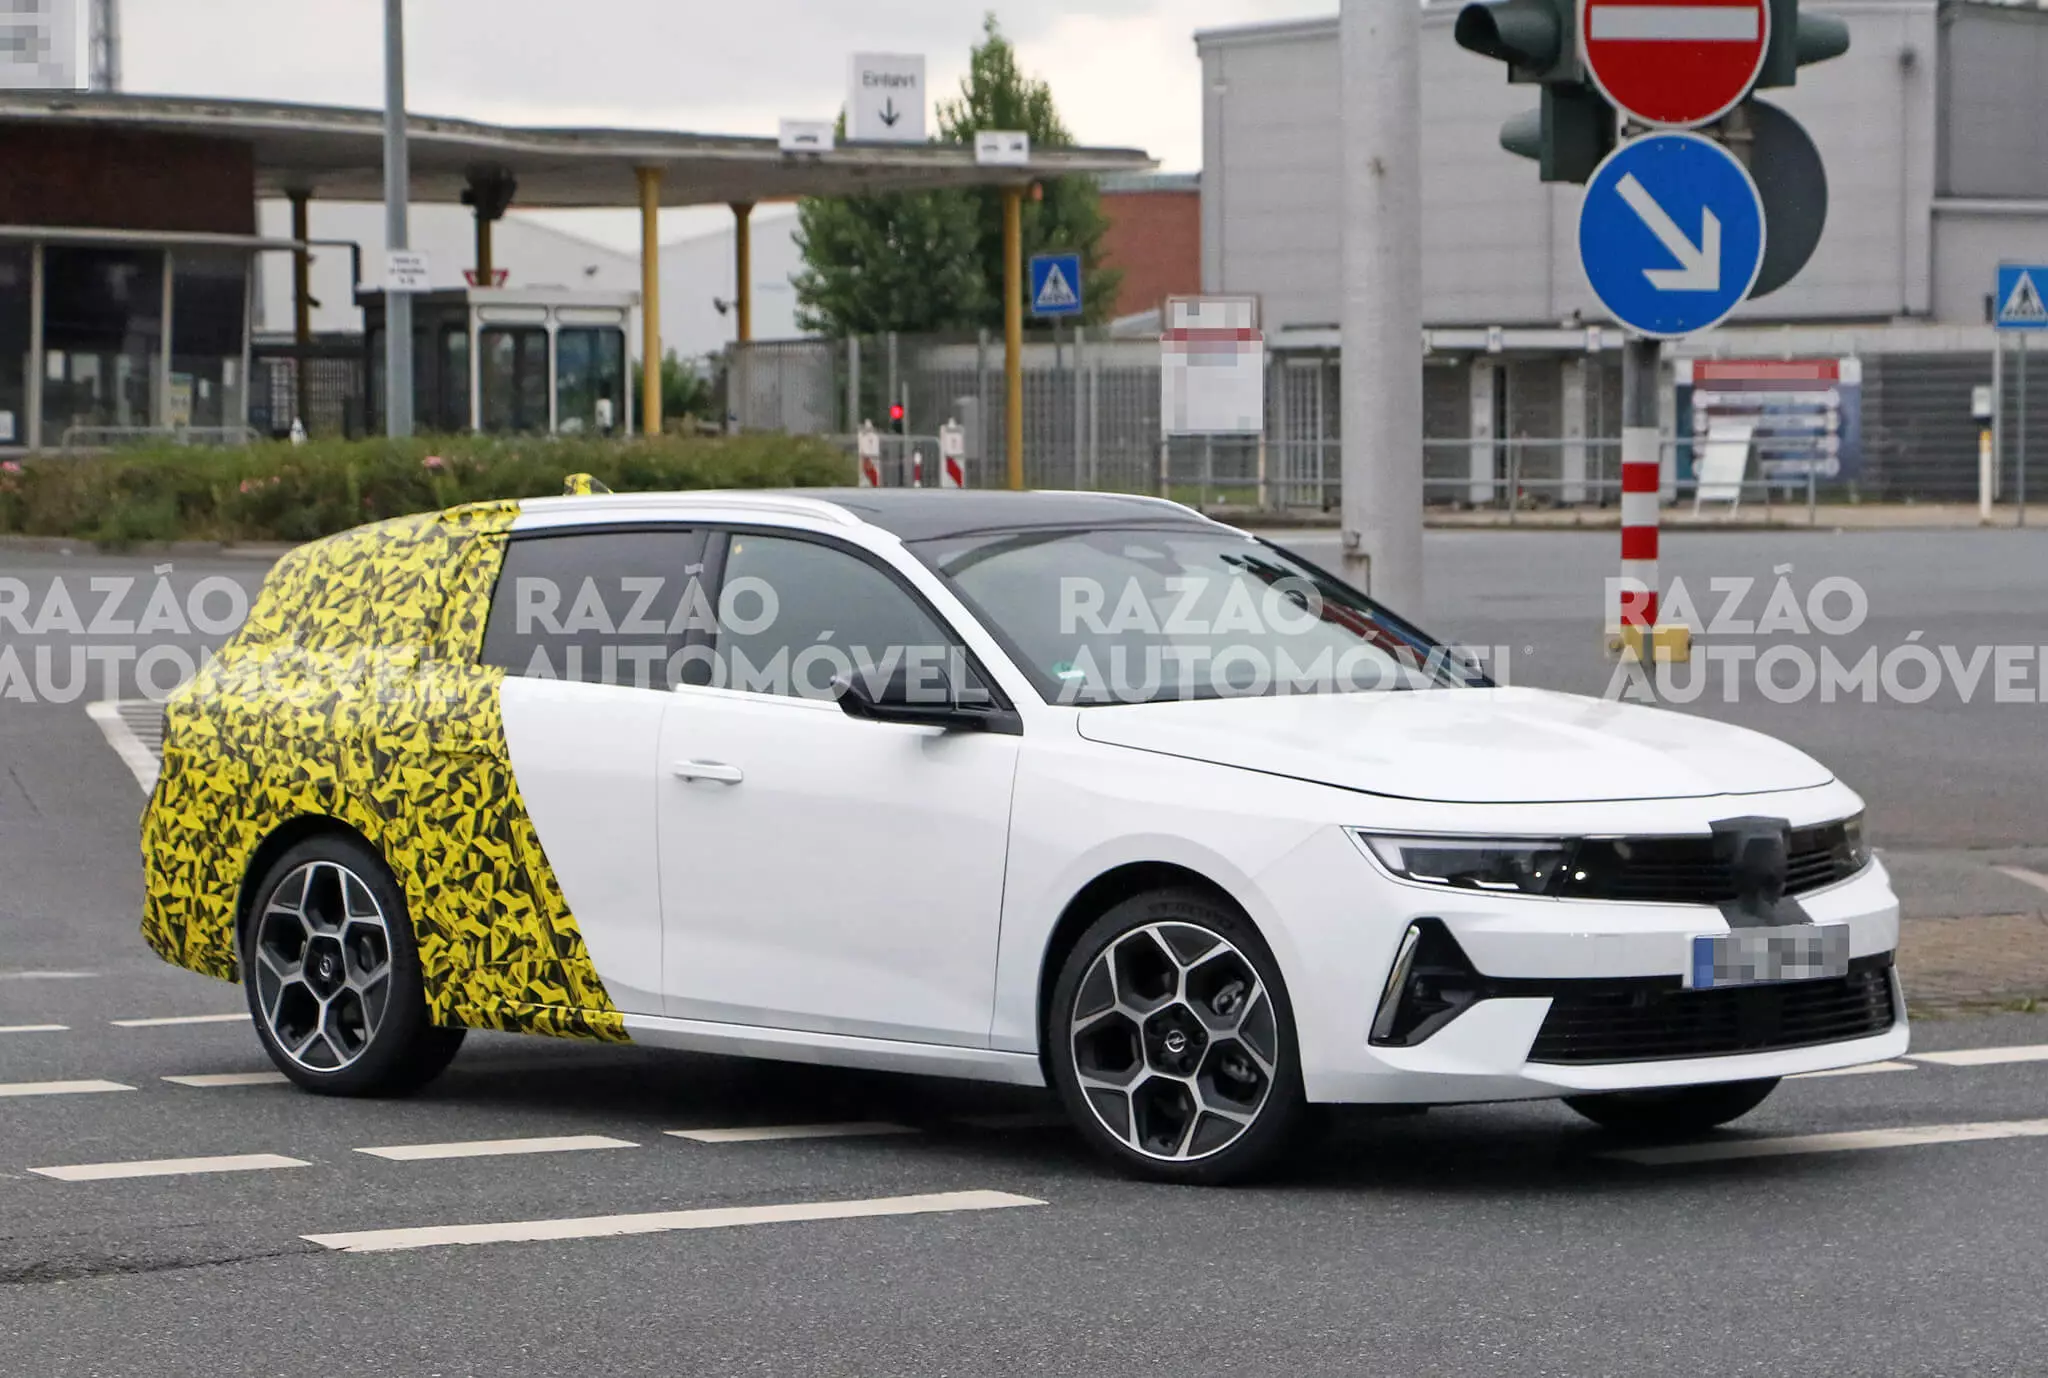 Špijunski kombi Opel Astra